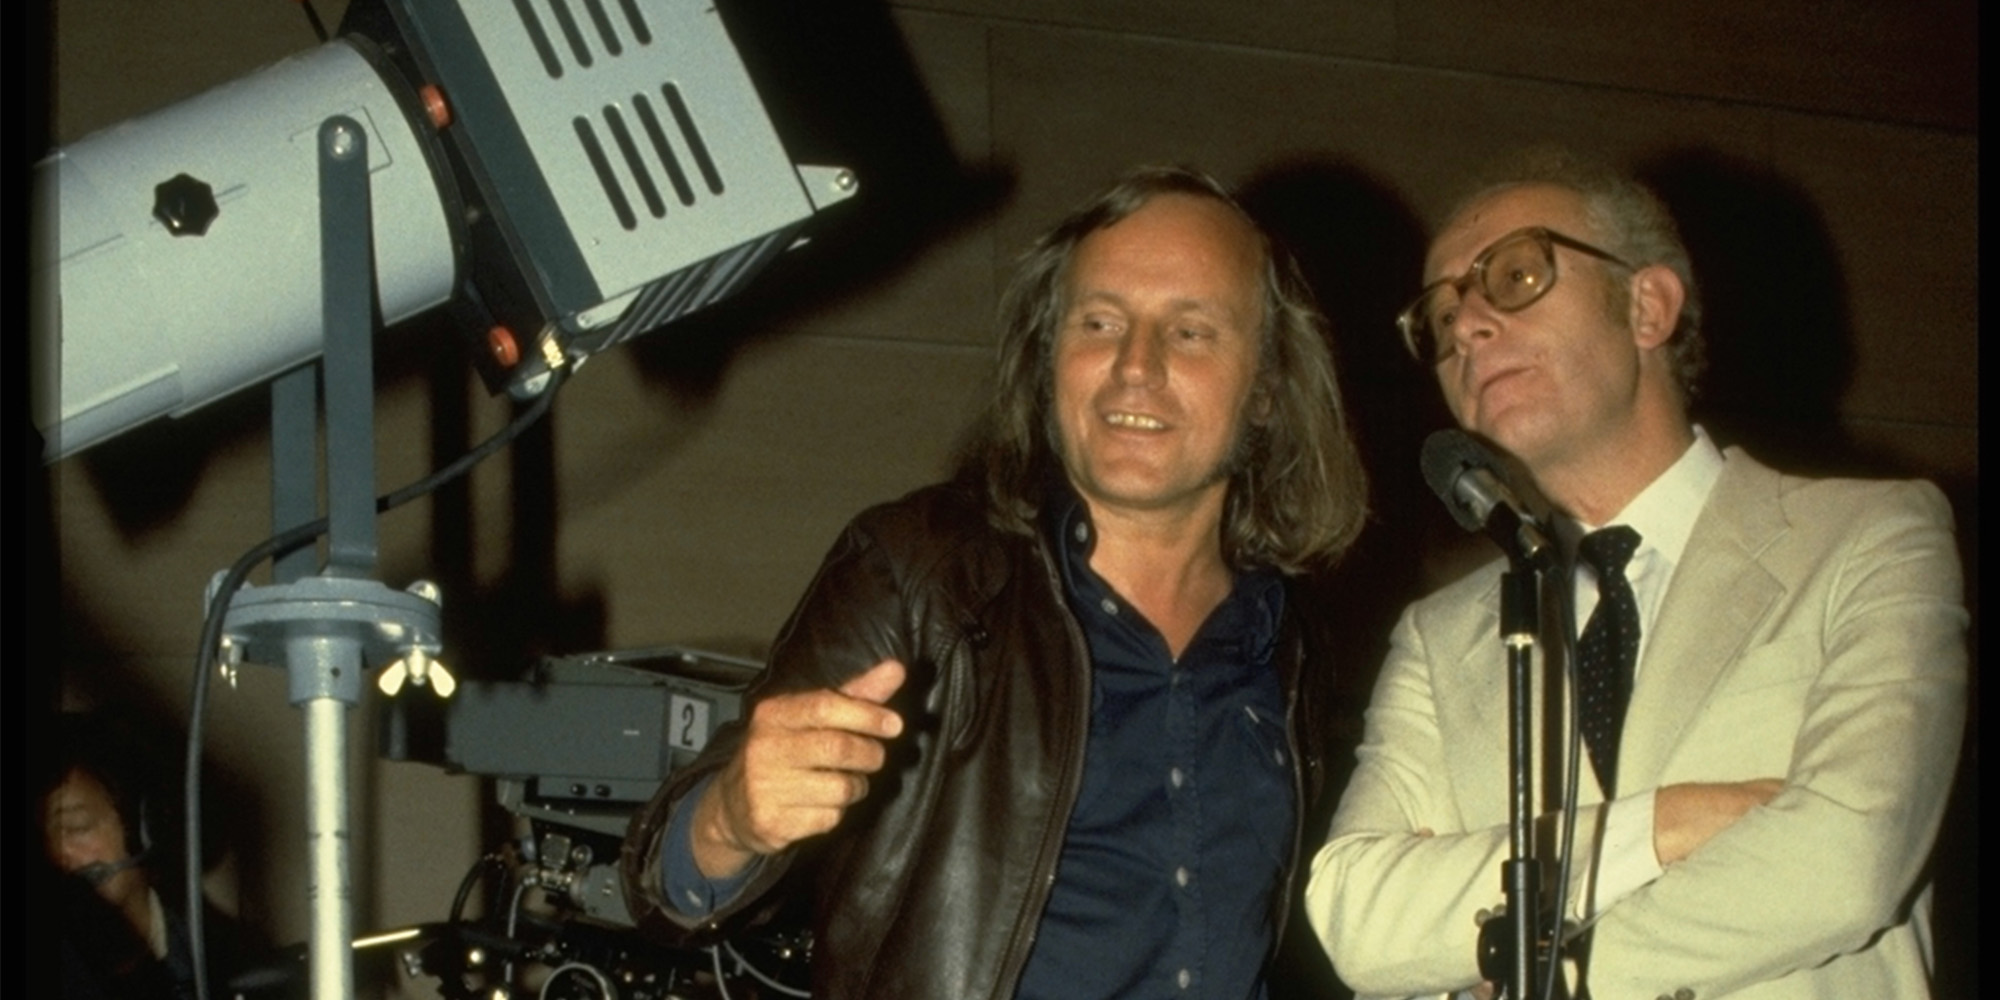 1979: Walter Haupt and Ernst Grissemann